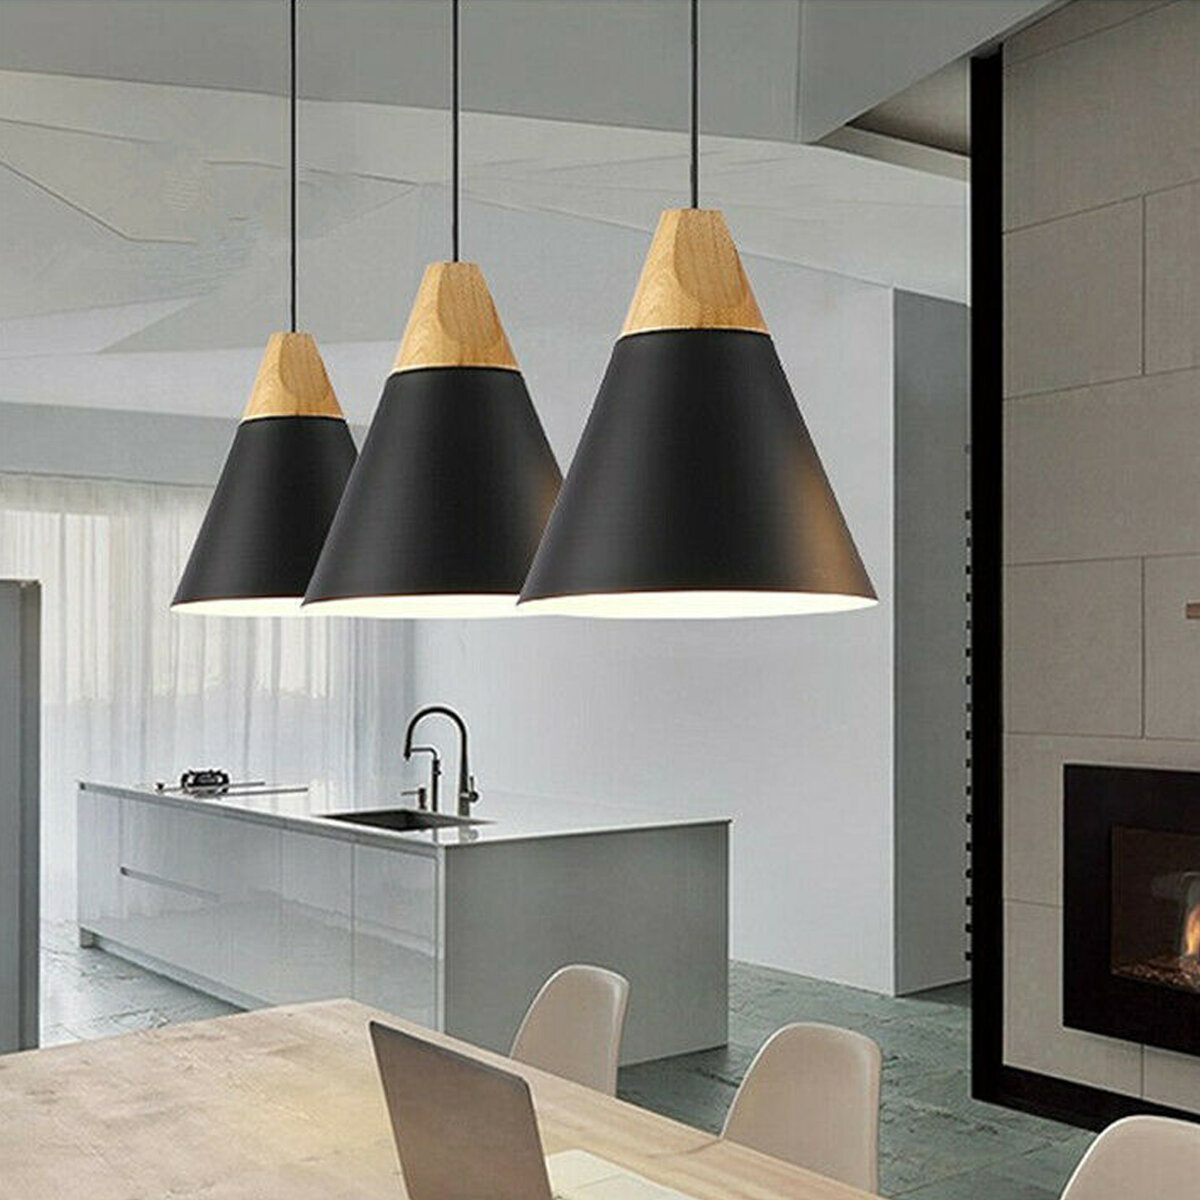 Modern Pendant Lighting Nordic, Light For Over Dining Table